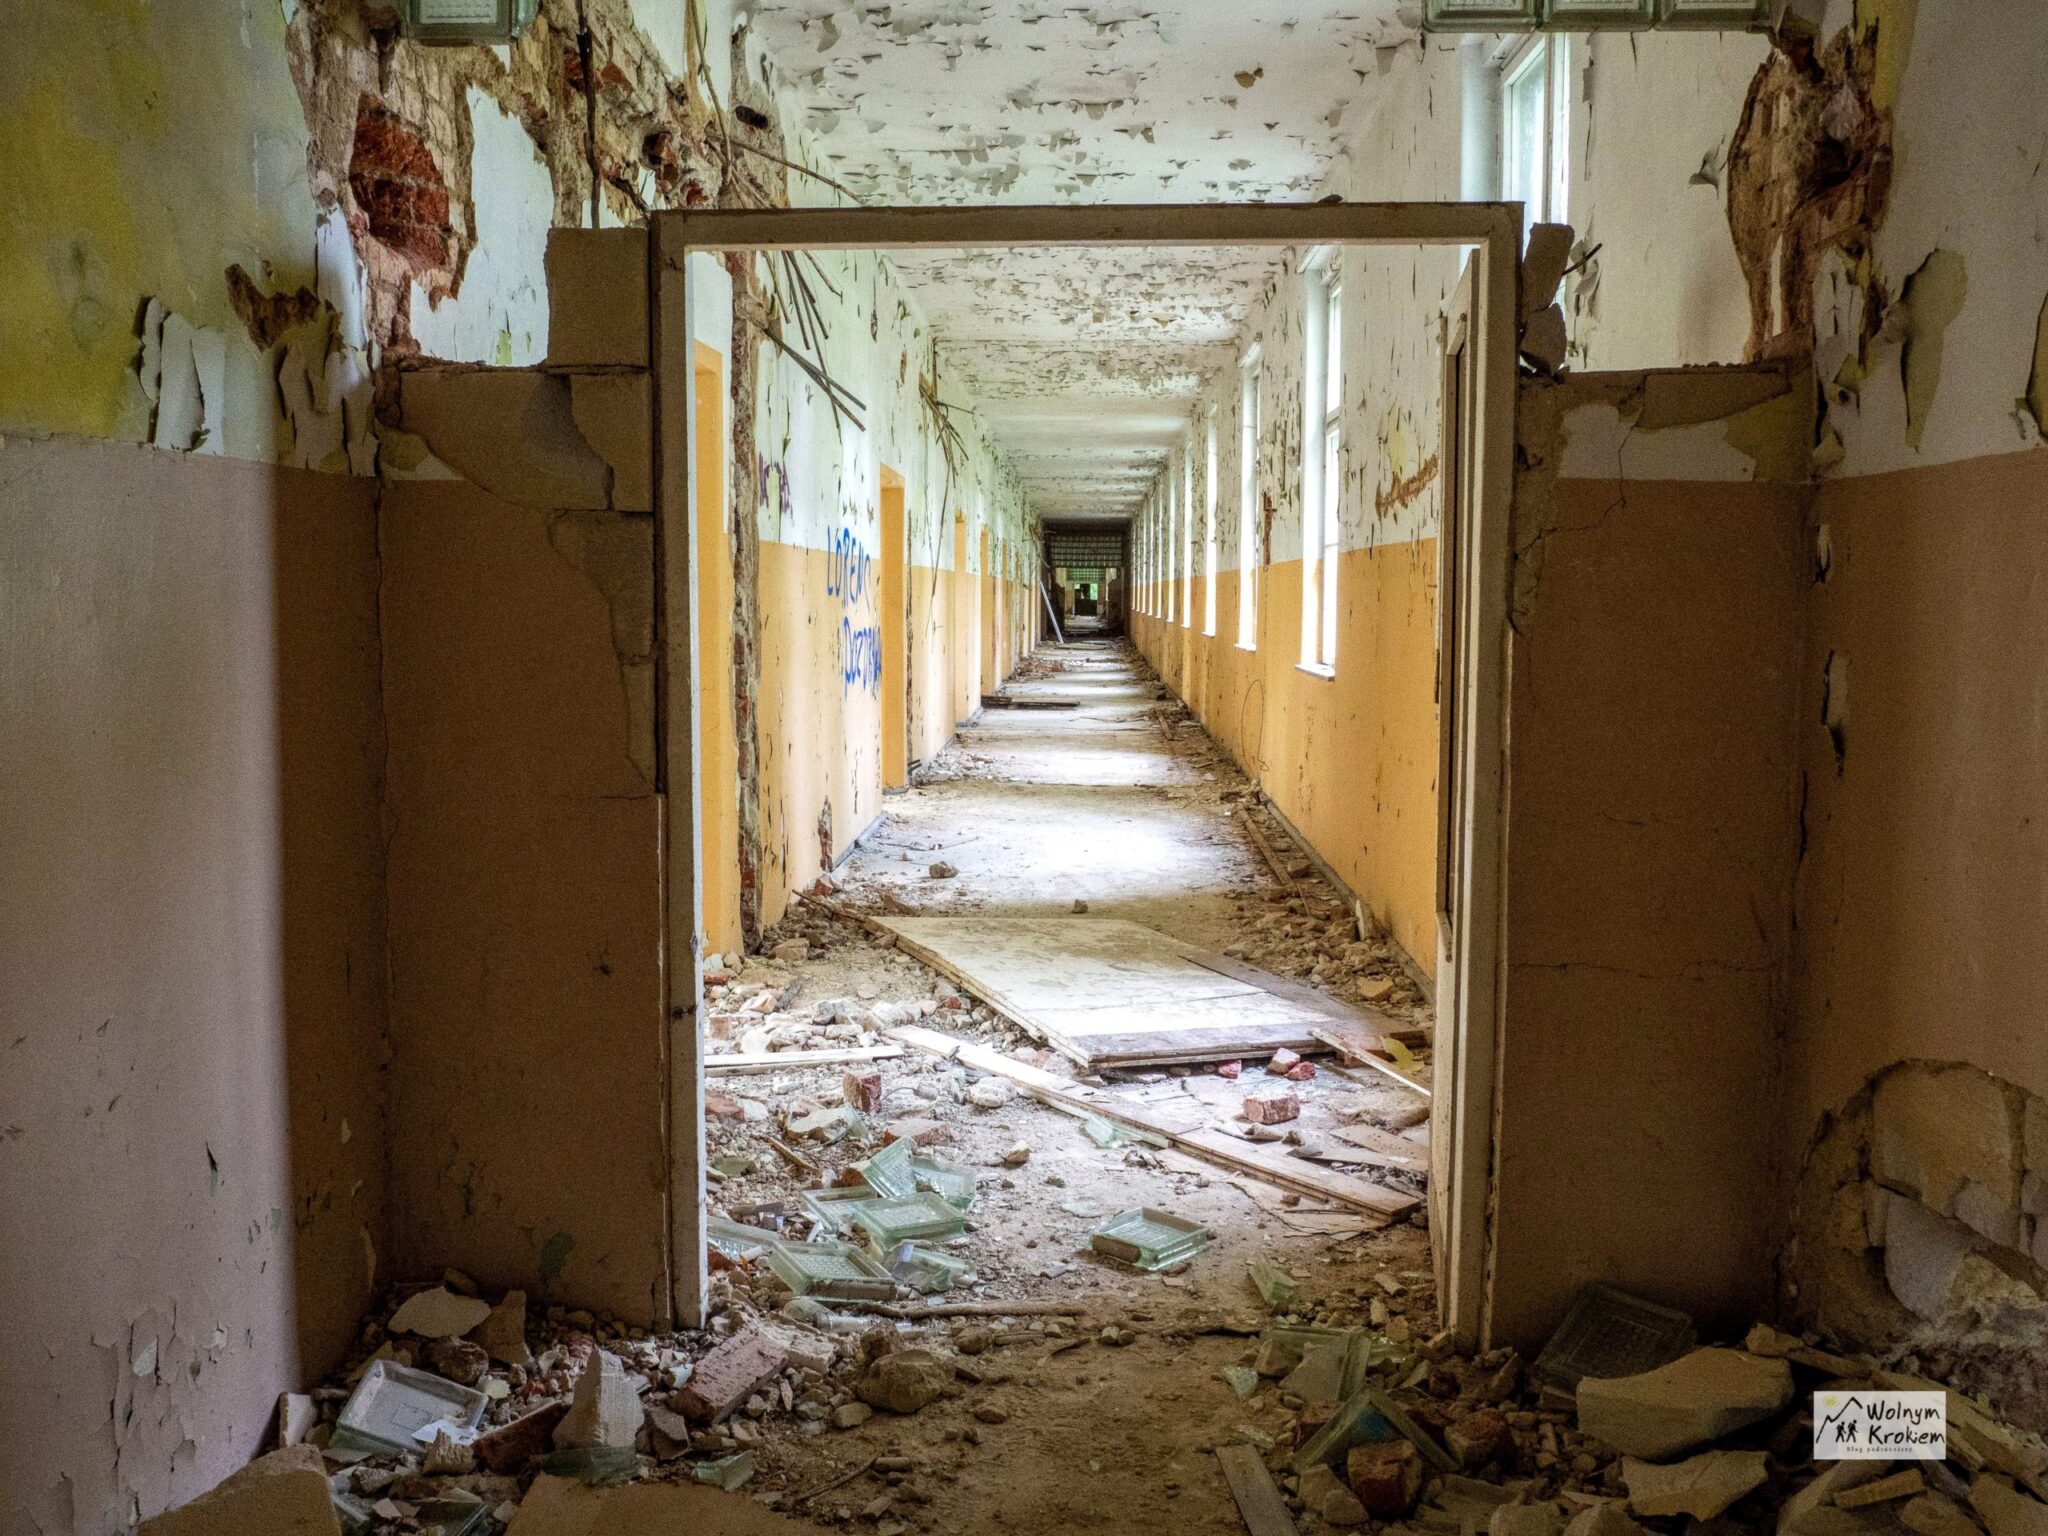 Opuszczony poradziecki szpital w Legnicy - zabytek, który znika w oczach